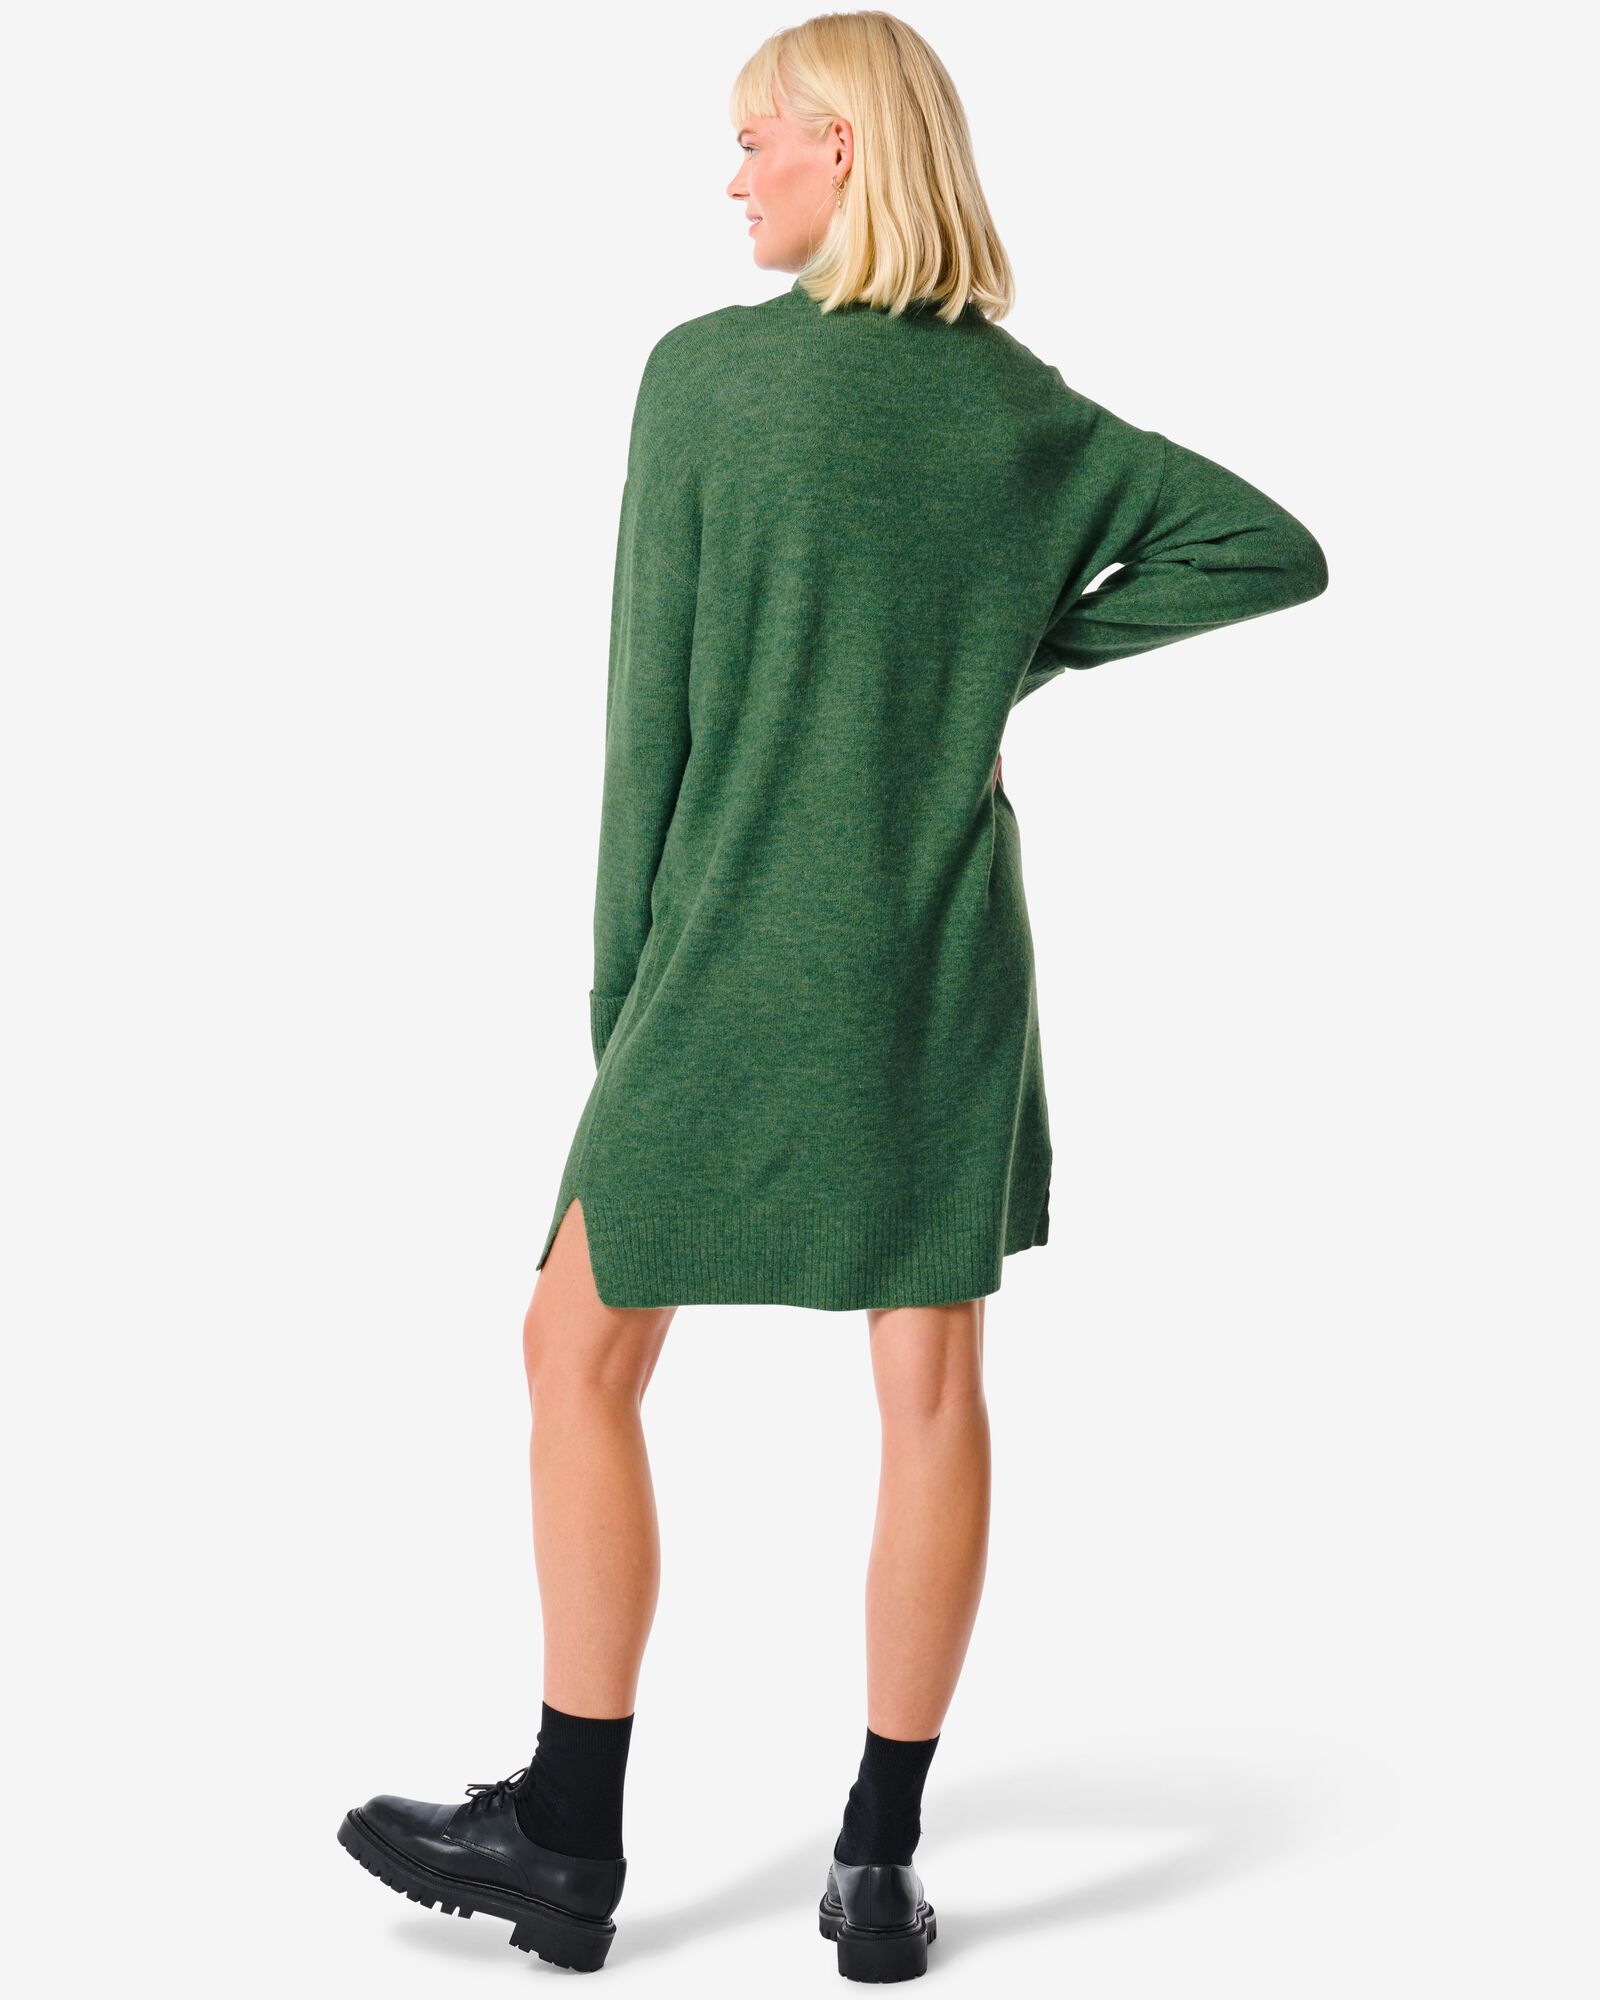 robe femme avec col en maille Vicky vert vert - 36326935GREEN - HEMA